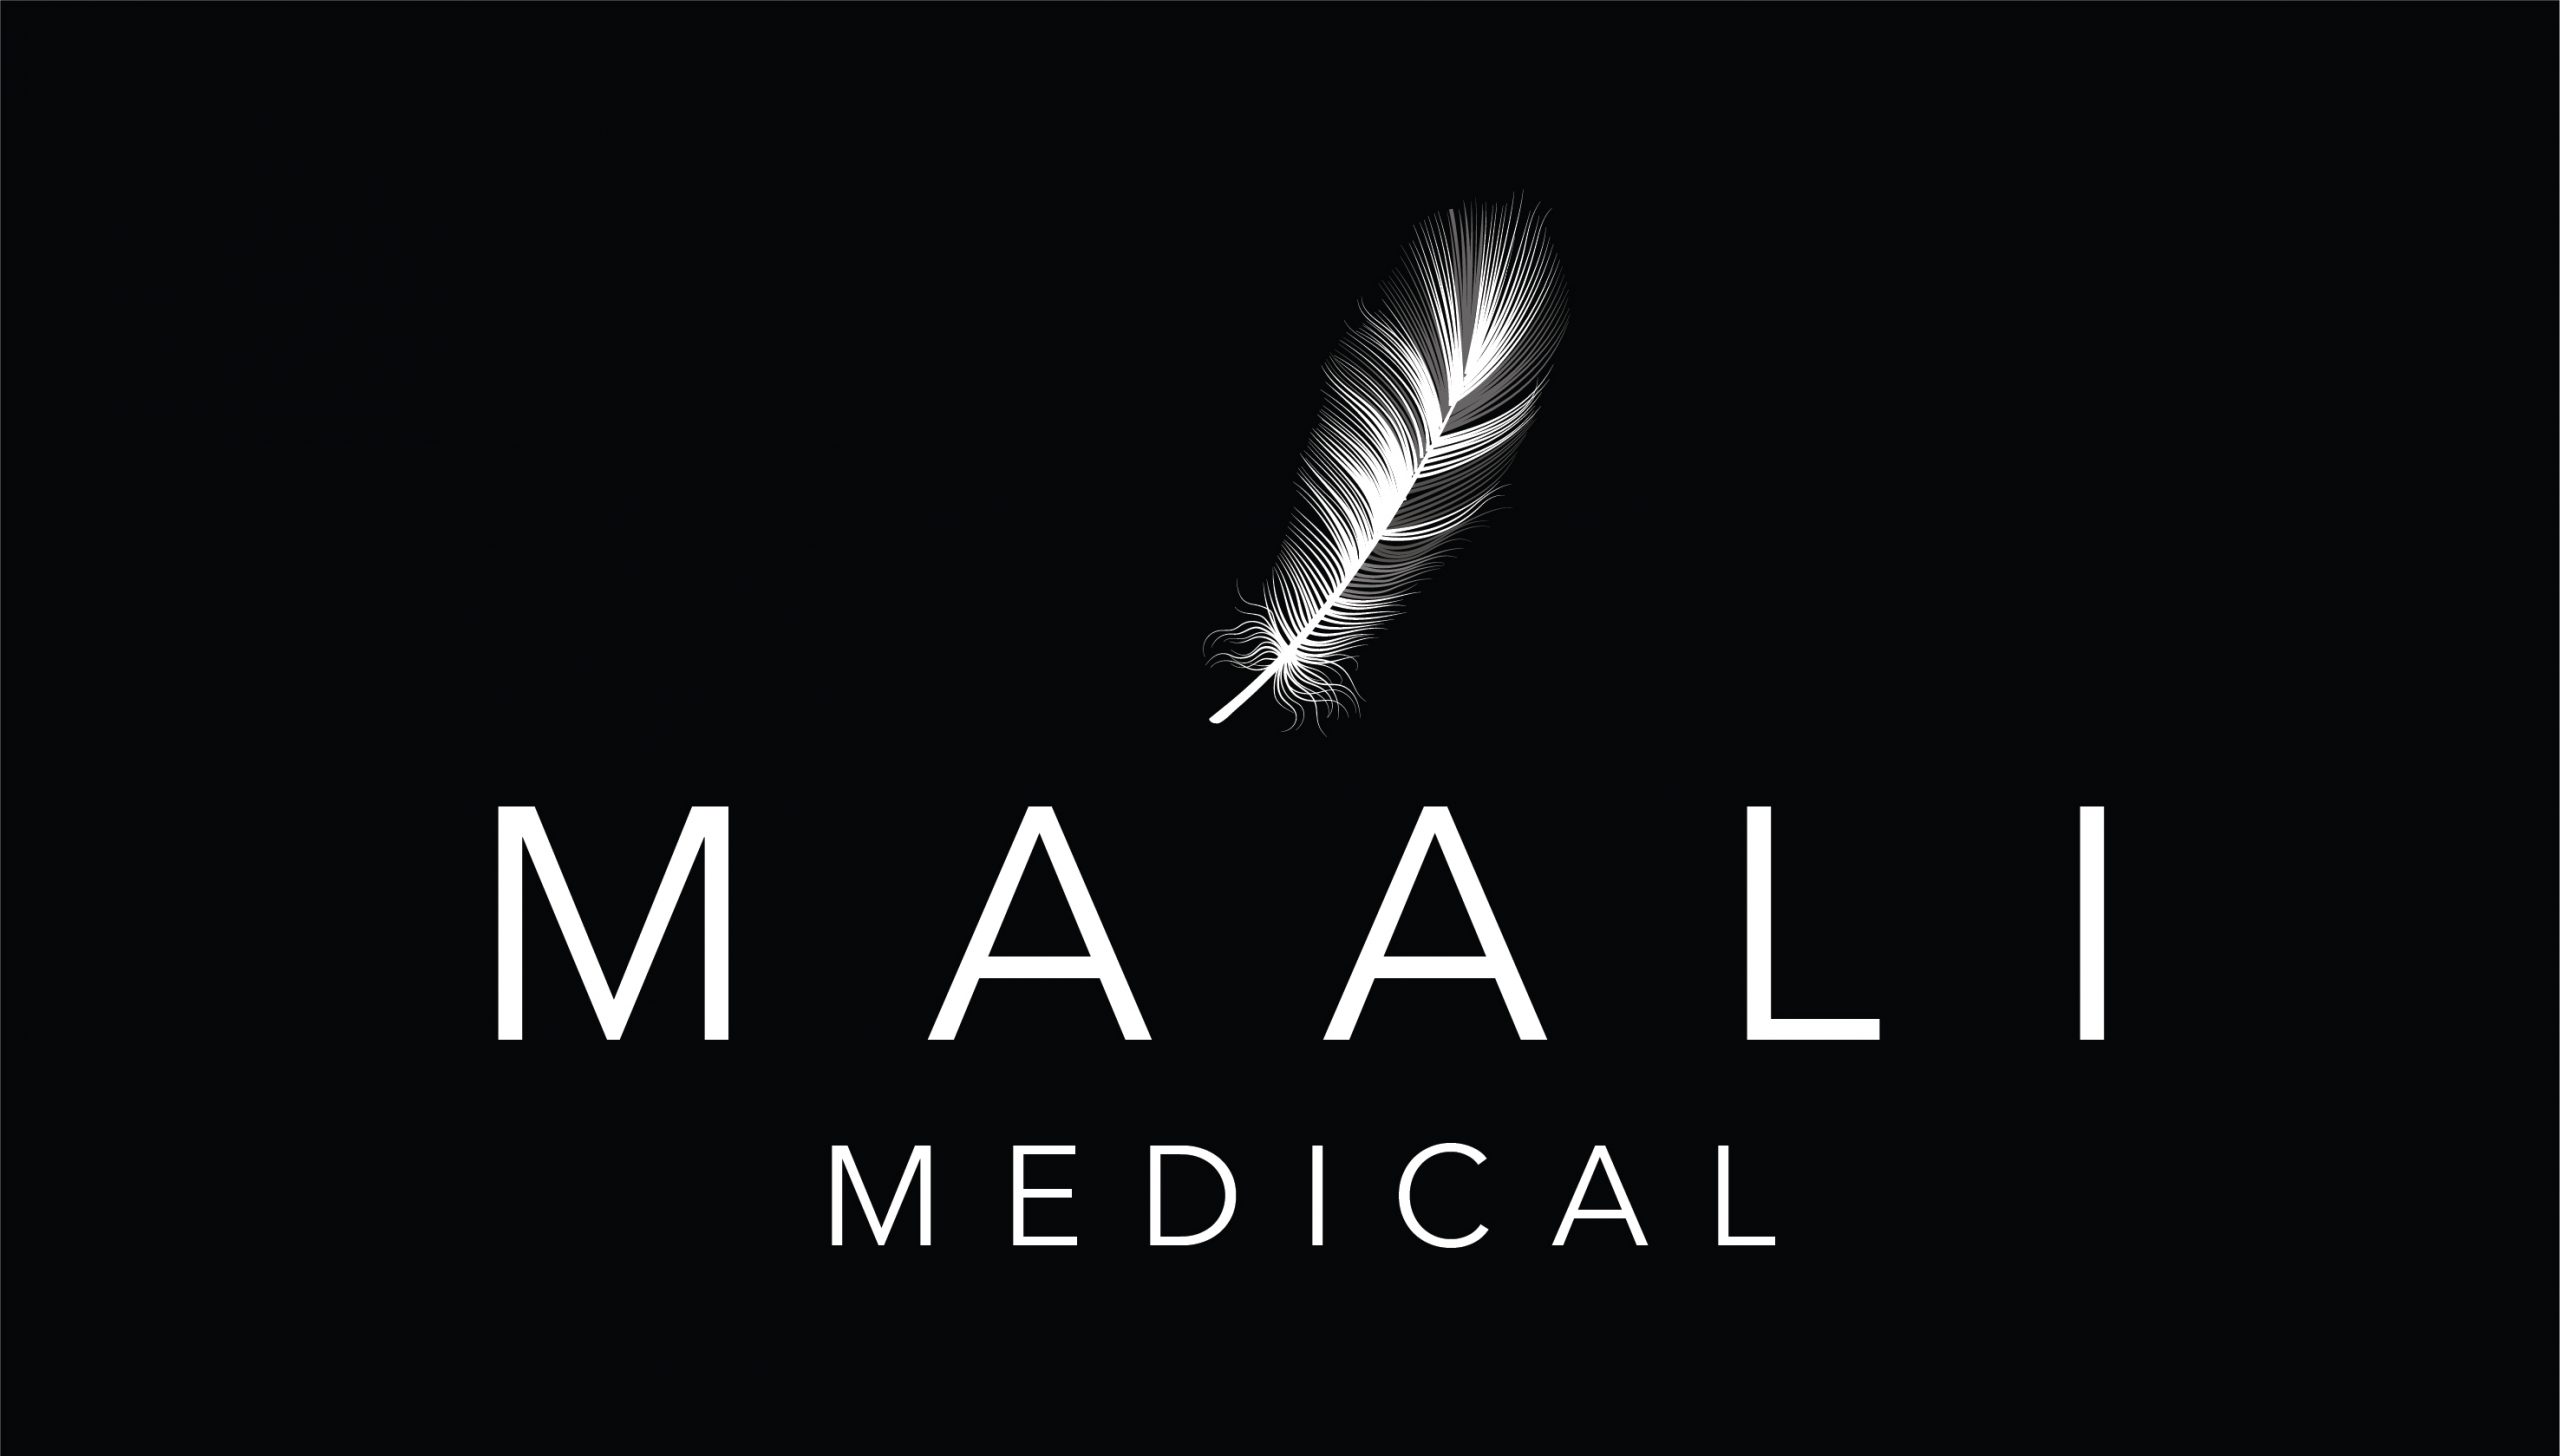 Maali Medical